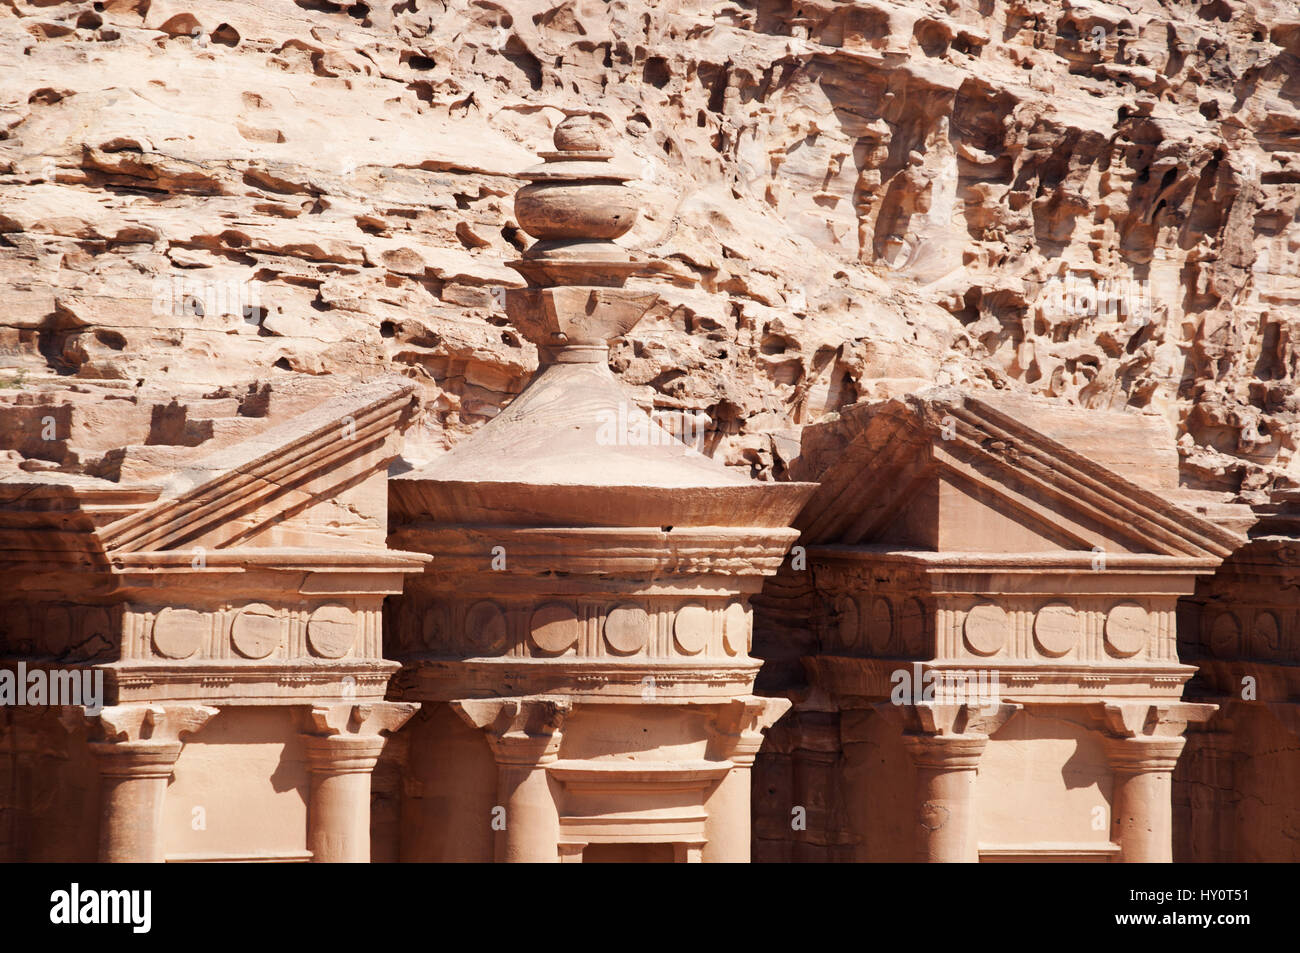 Jordanie : le fronton du monastère Deir Ad, ou El Deir, le bâtiment monumental taillé rock dans les vestiges archéologiques de la ville nabatéenne de Pétra Banque D'Images